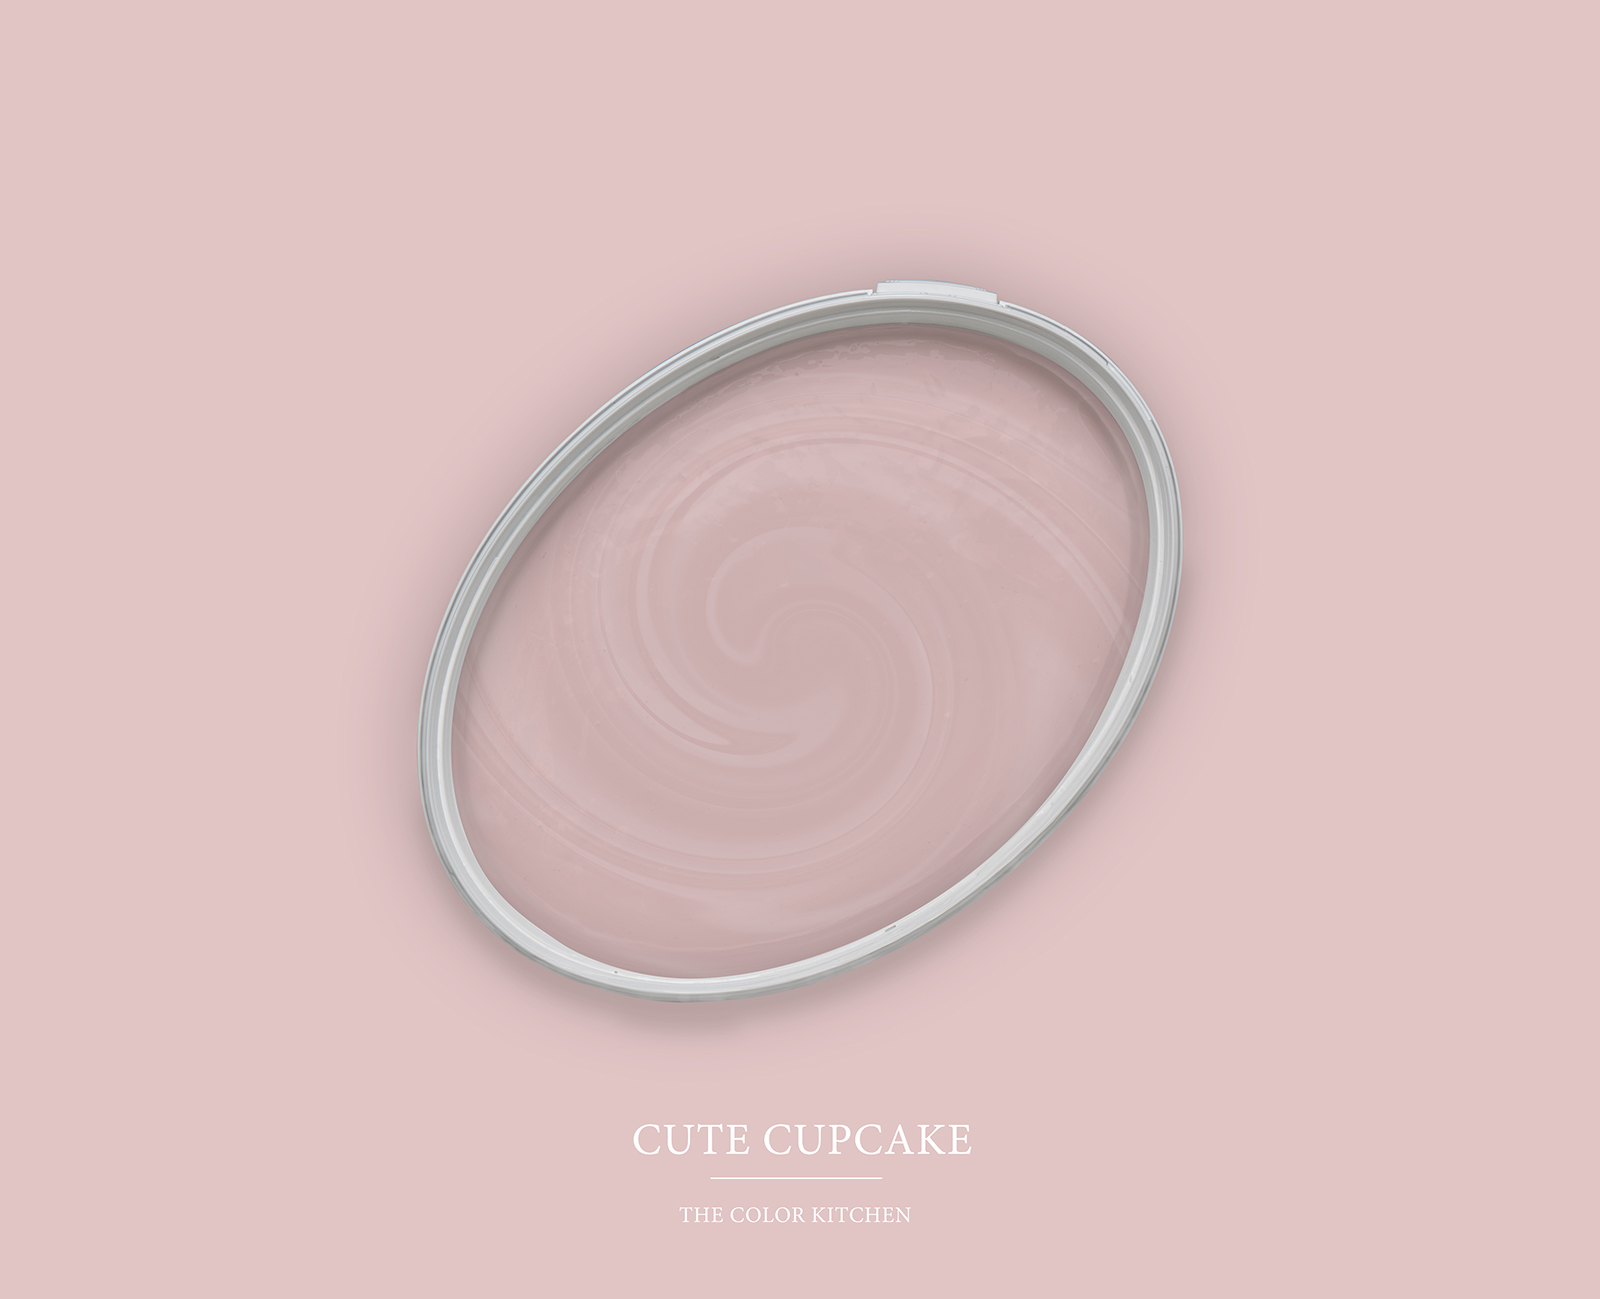 Peinture murale TCK7008 »Cute Cupcake« en rose tendre – 2,5 litres
